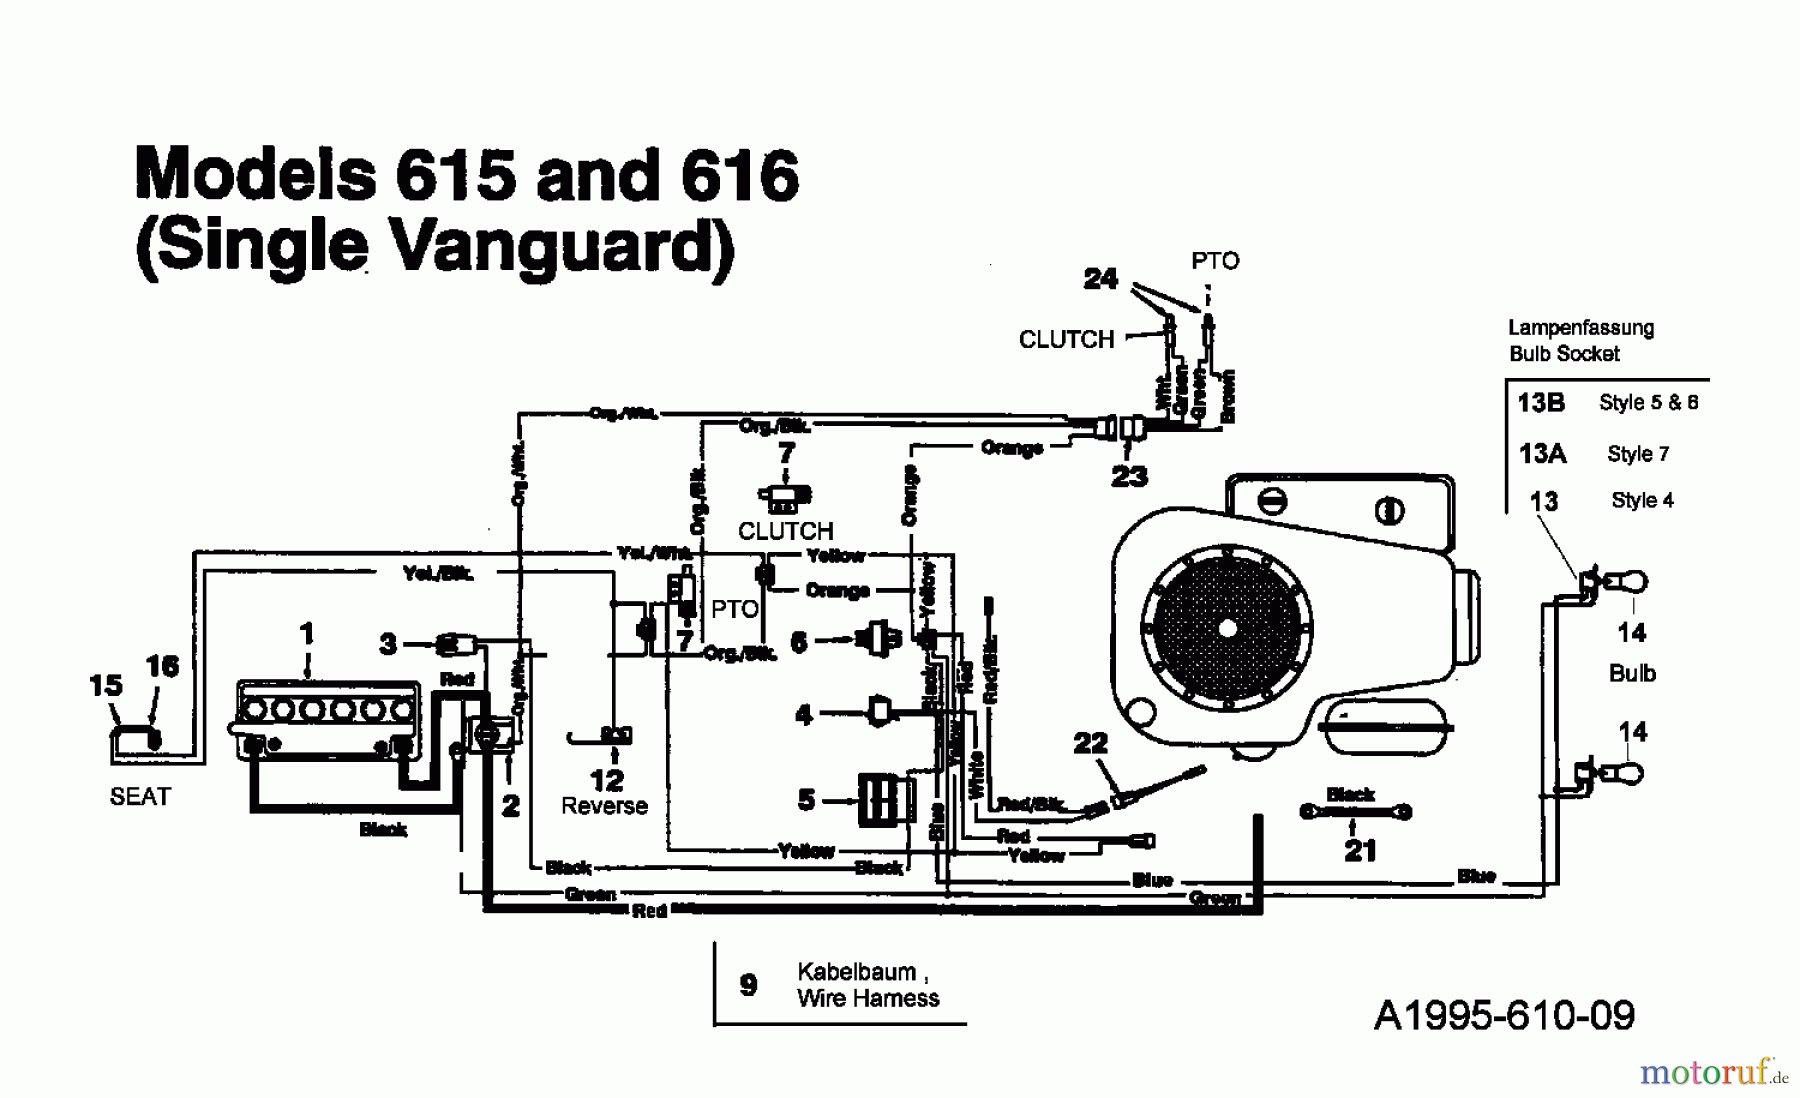  MTD Rasentraktoren 16/107 135T615G678  (1995) Schaltplan Vanguard